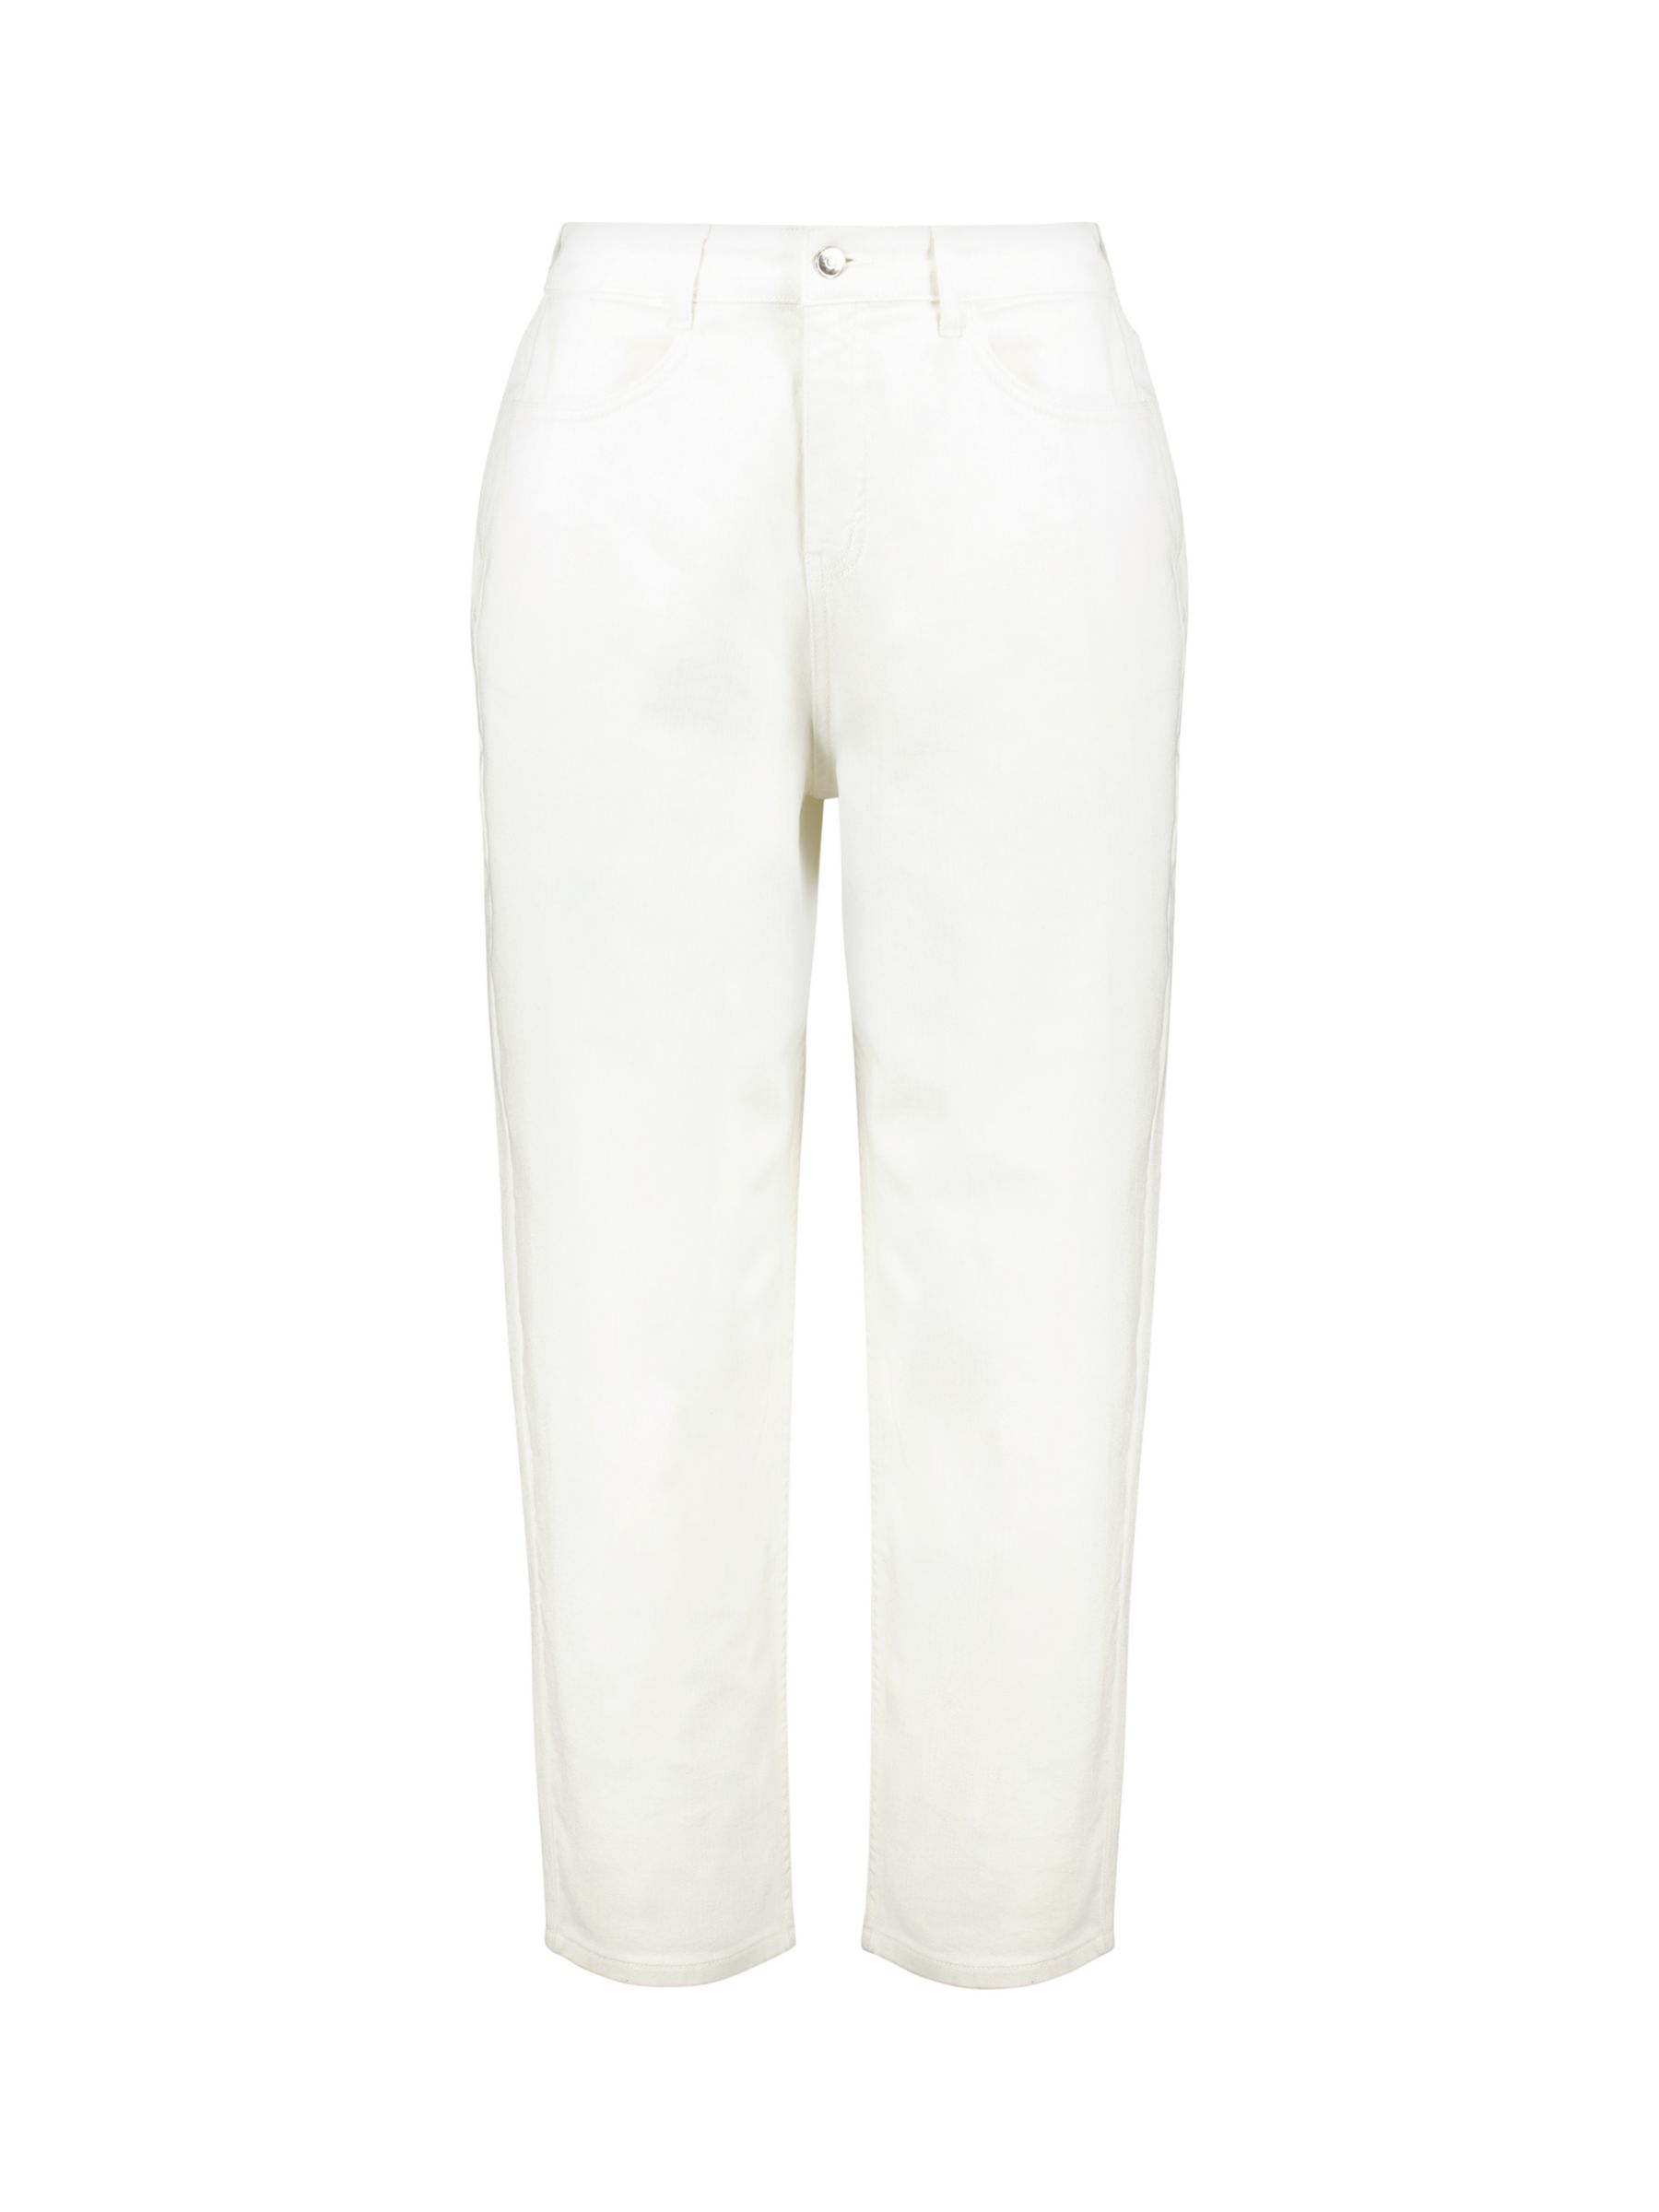 Baukjen Organic Barrell Leg Jeans, Soft White, 6